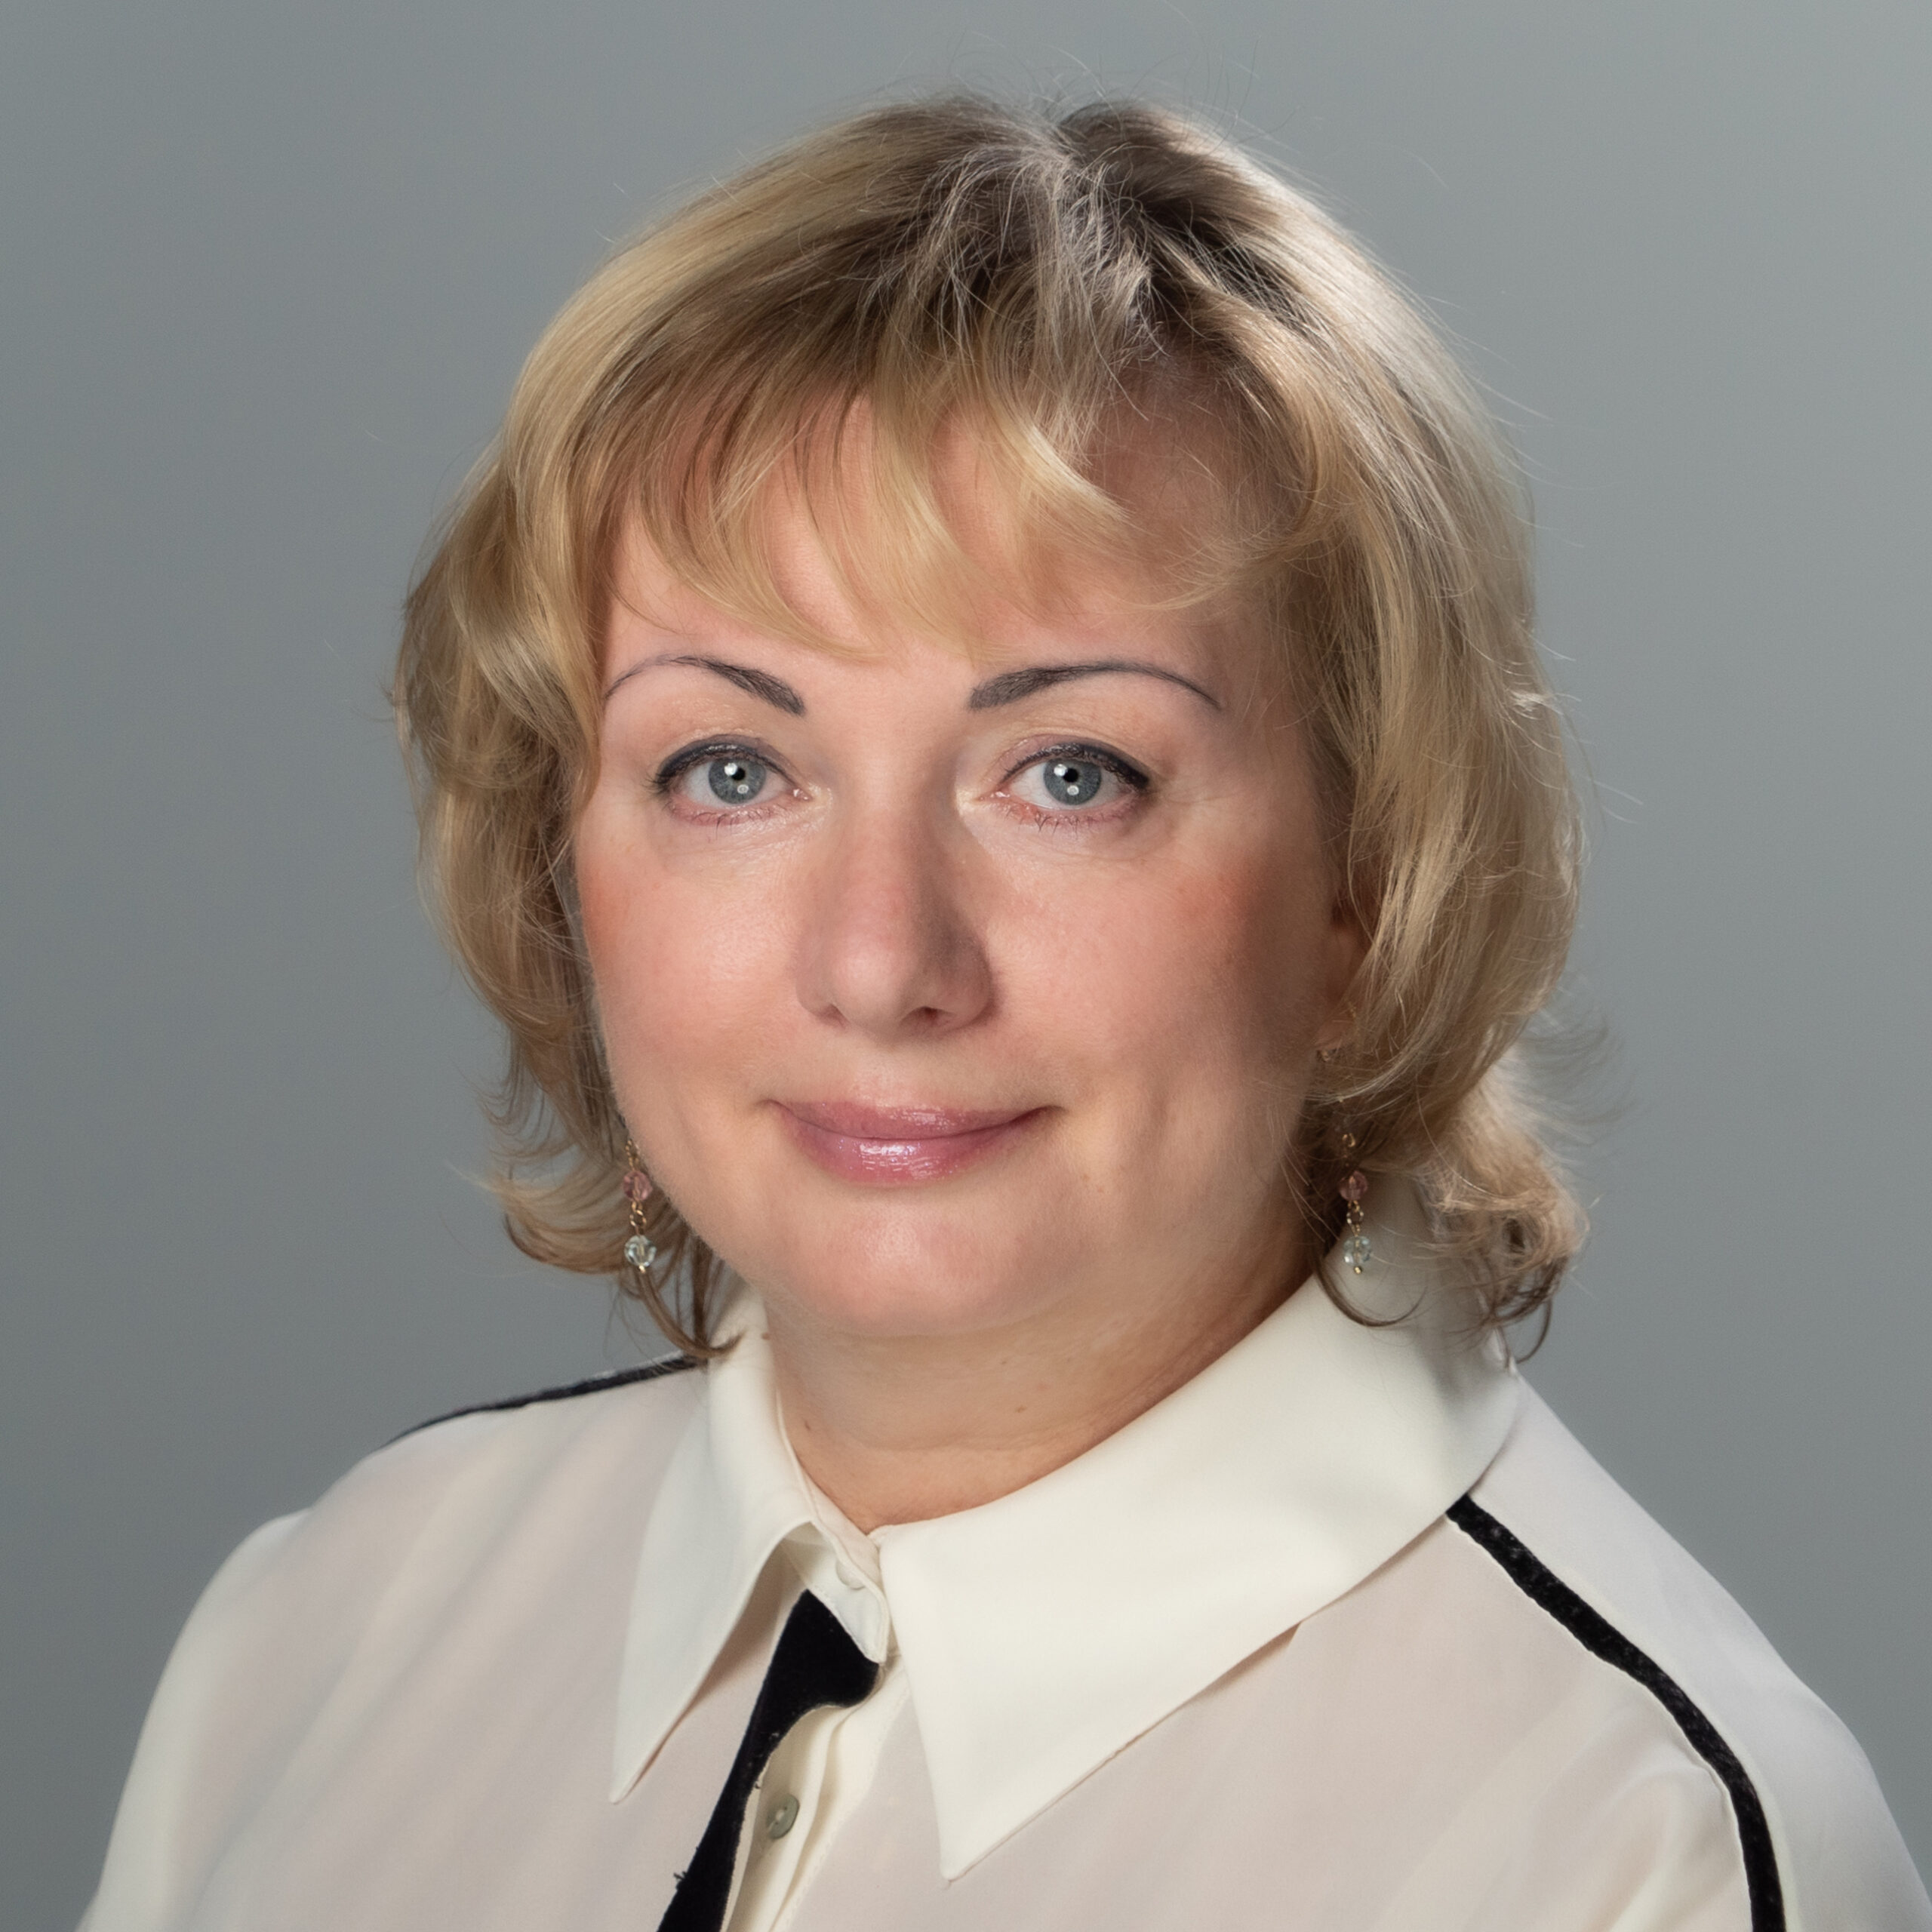 Irina Savchenko